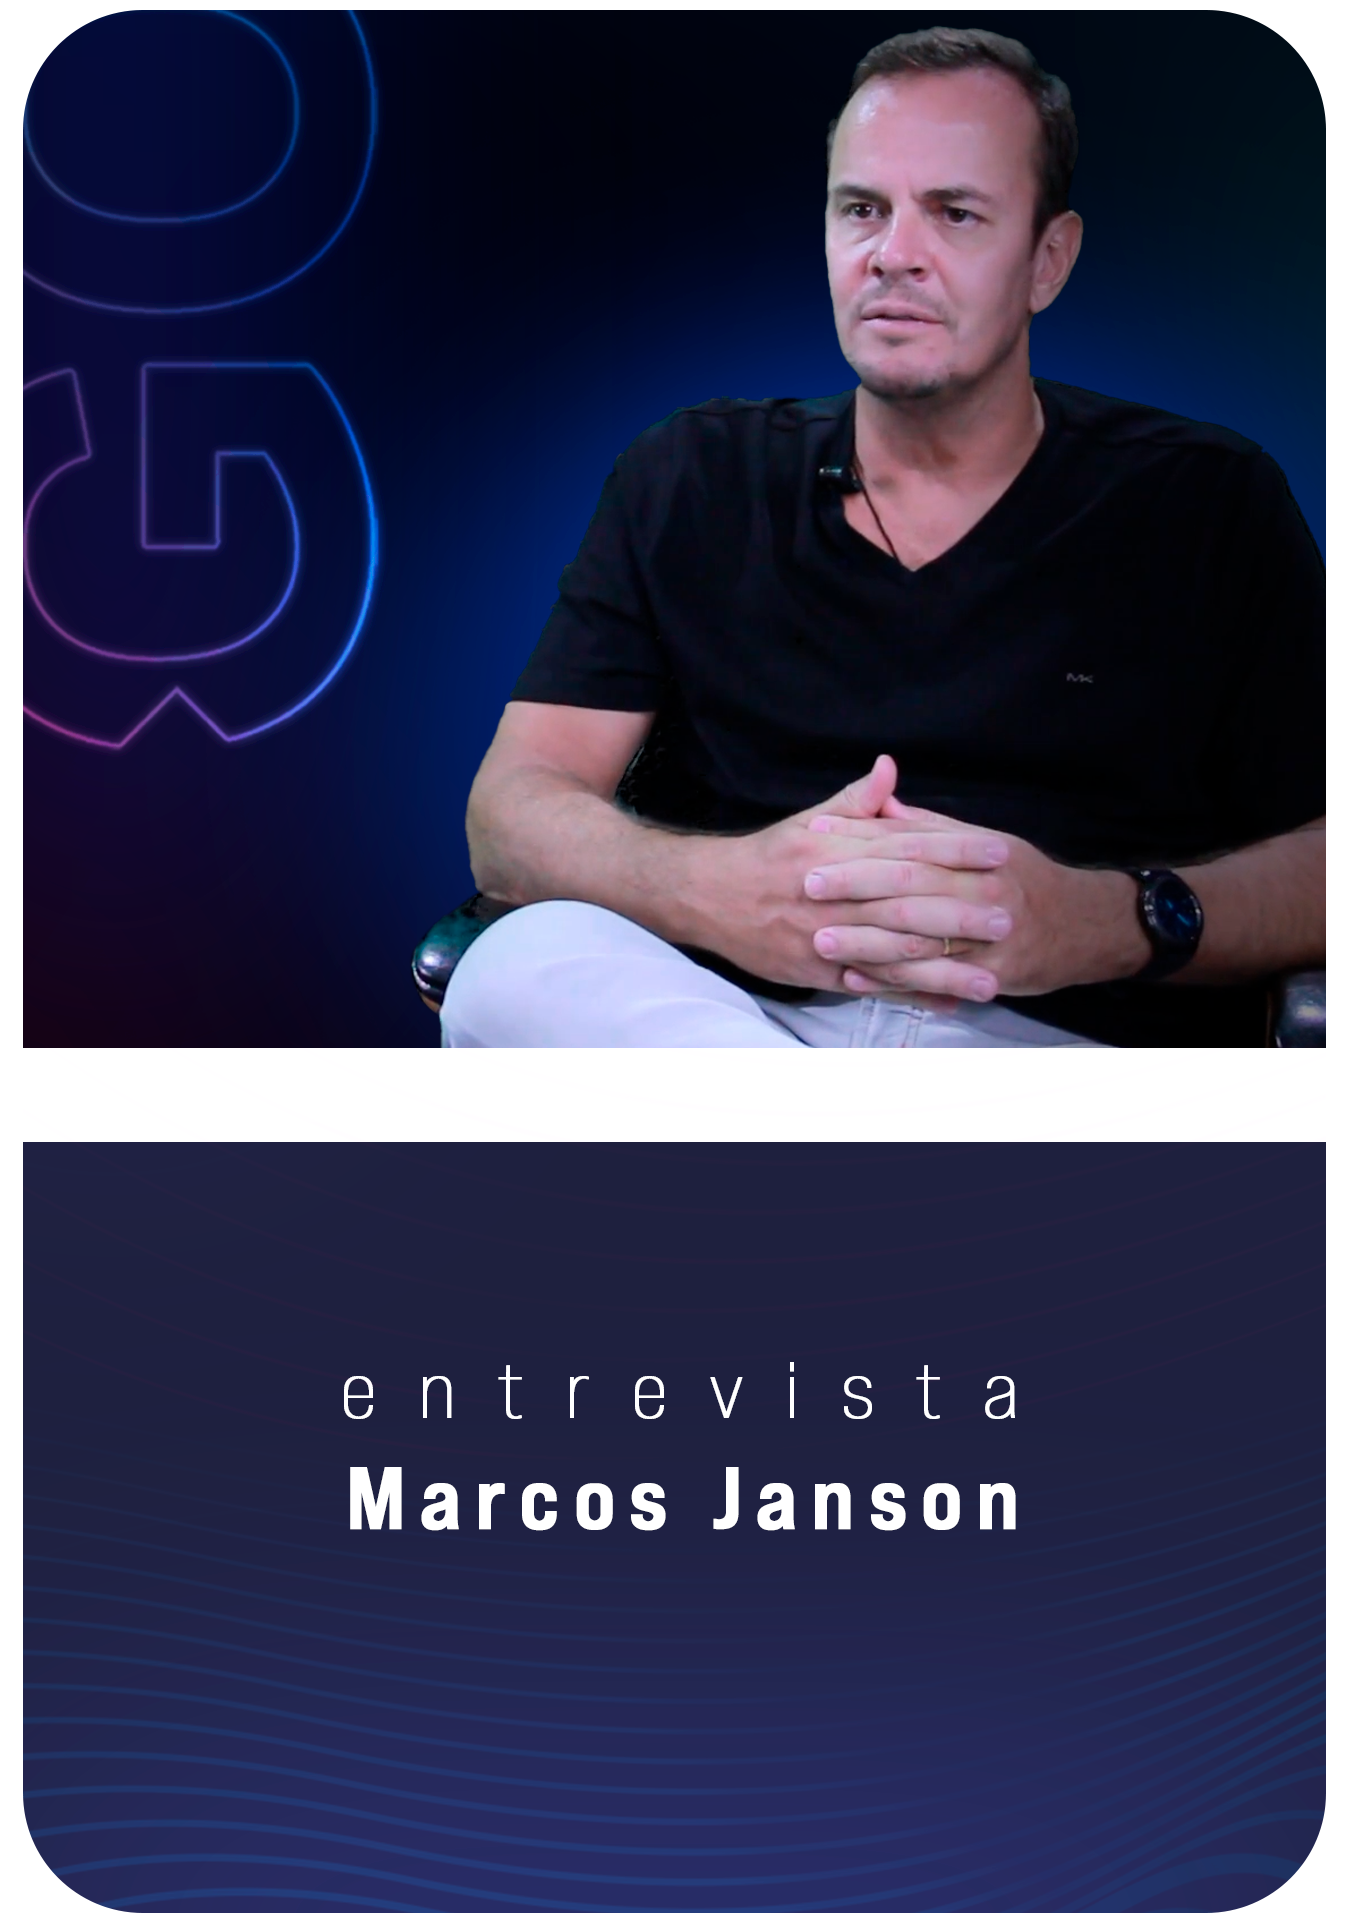 Dr. Marcos Janson